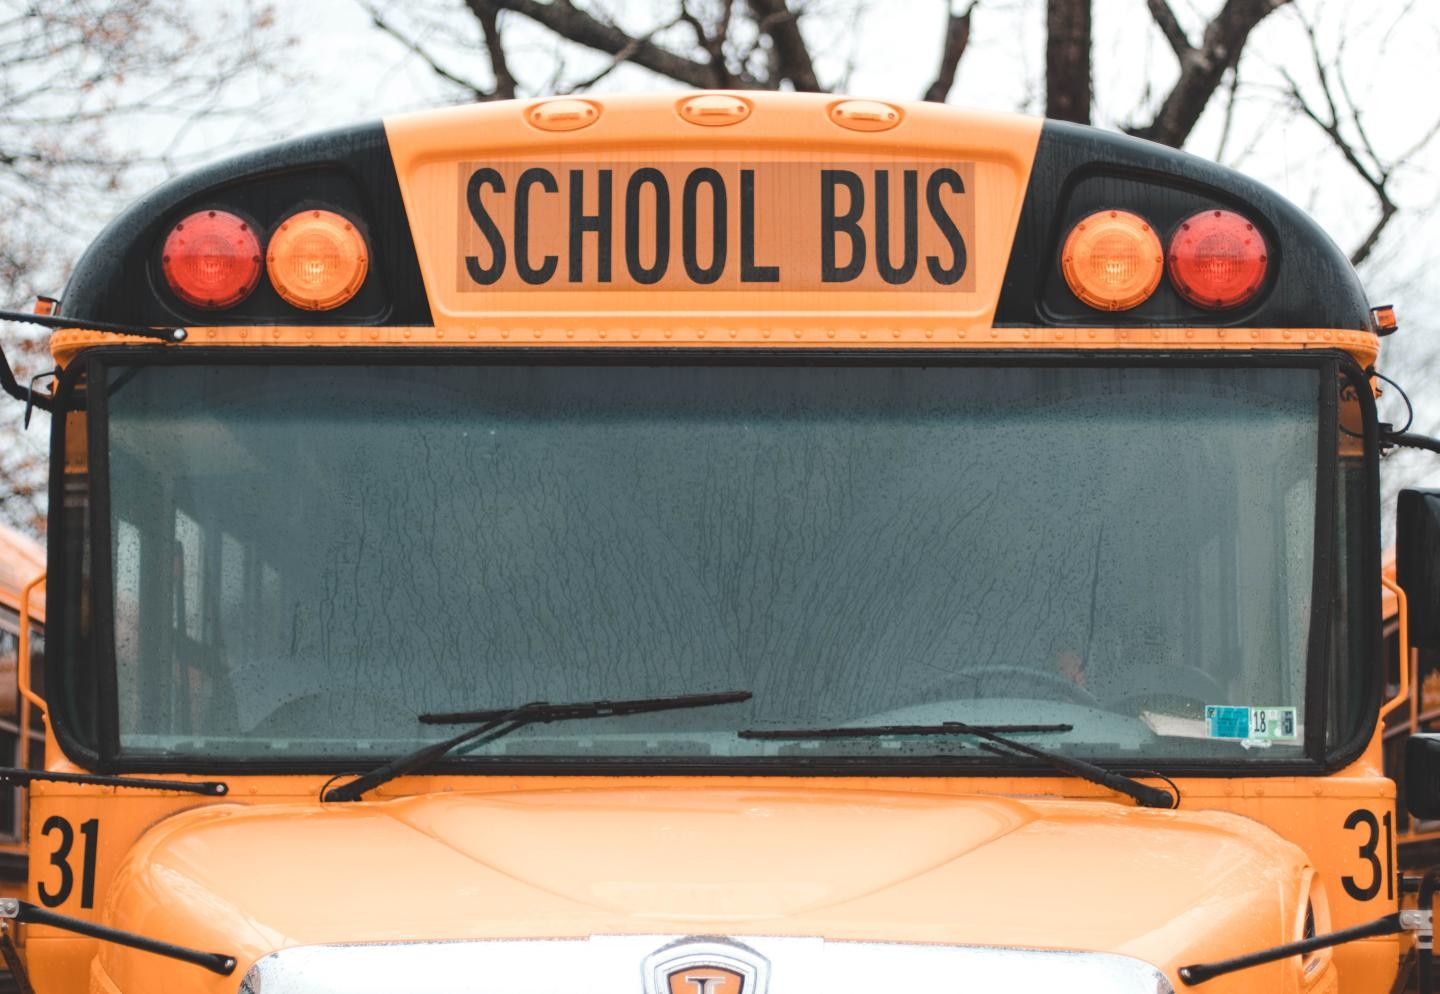 Front eines orangenfarbenen Schulbusses mit Aufschrift "school bus"